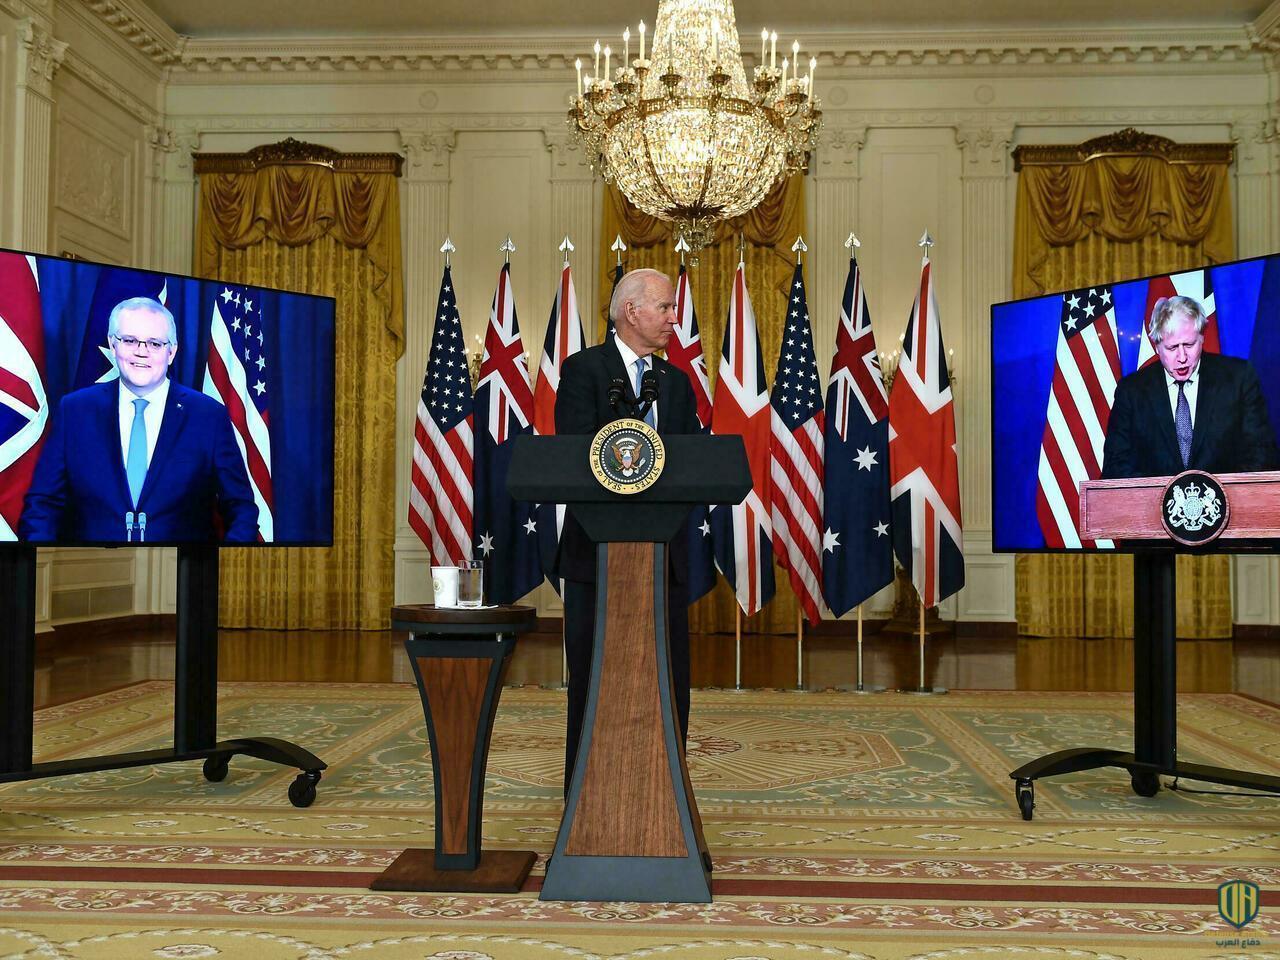 الرئيس الأميركي جو بايدن خلال مؤتمر عبر الفيديو مع رئيسي الوزراء البريطاني بوريس جونسون والأسترالي سكوت موريسون